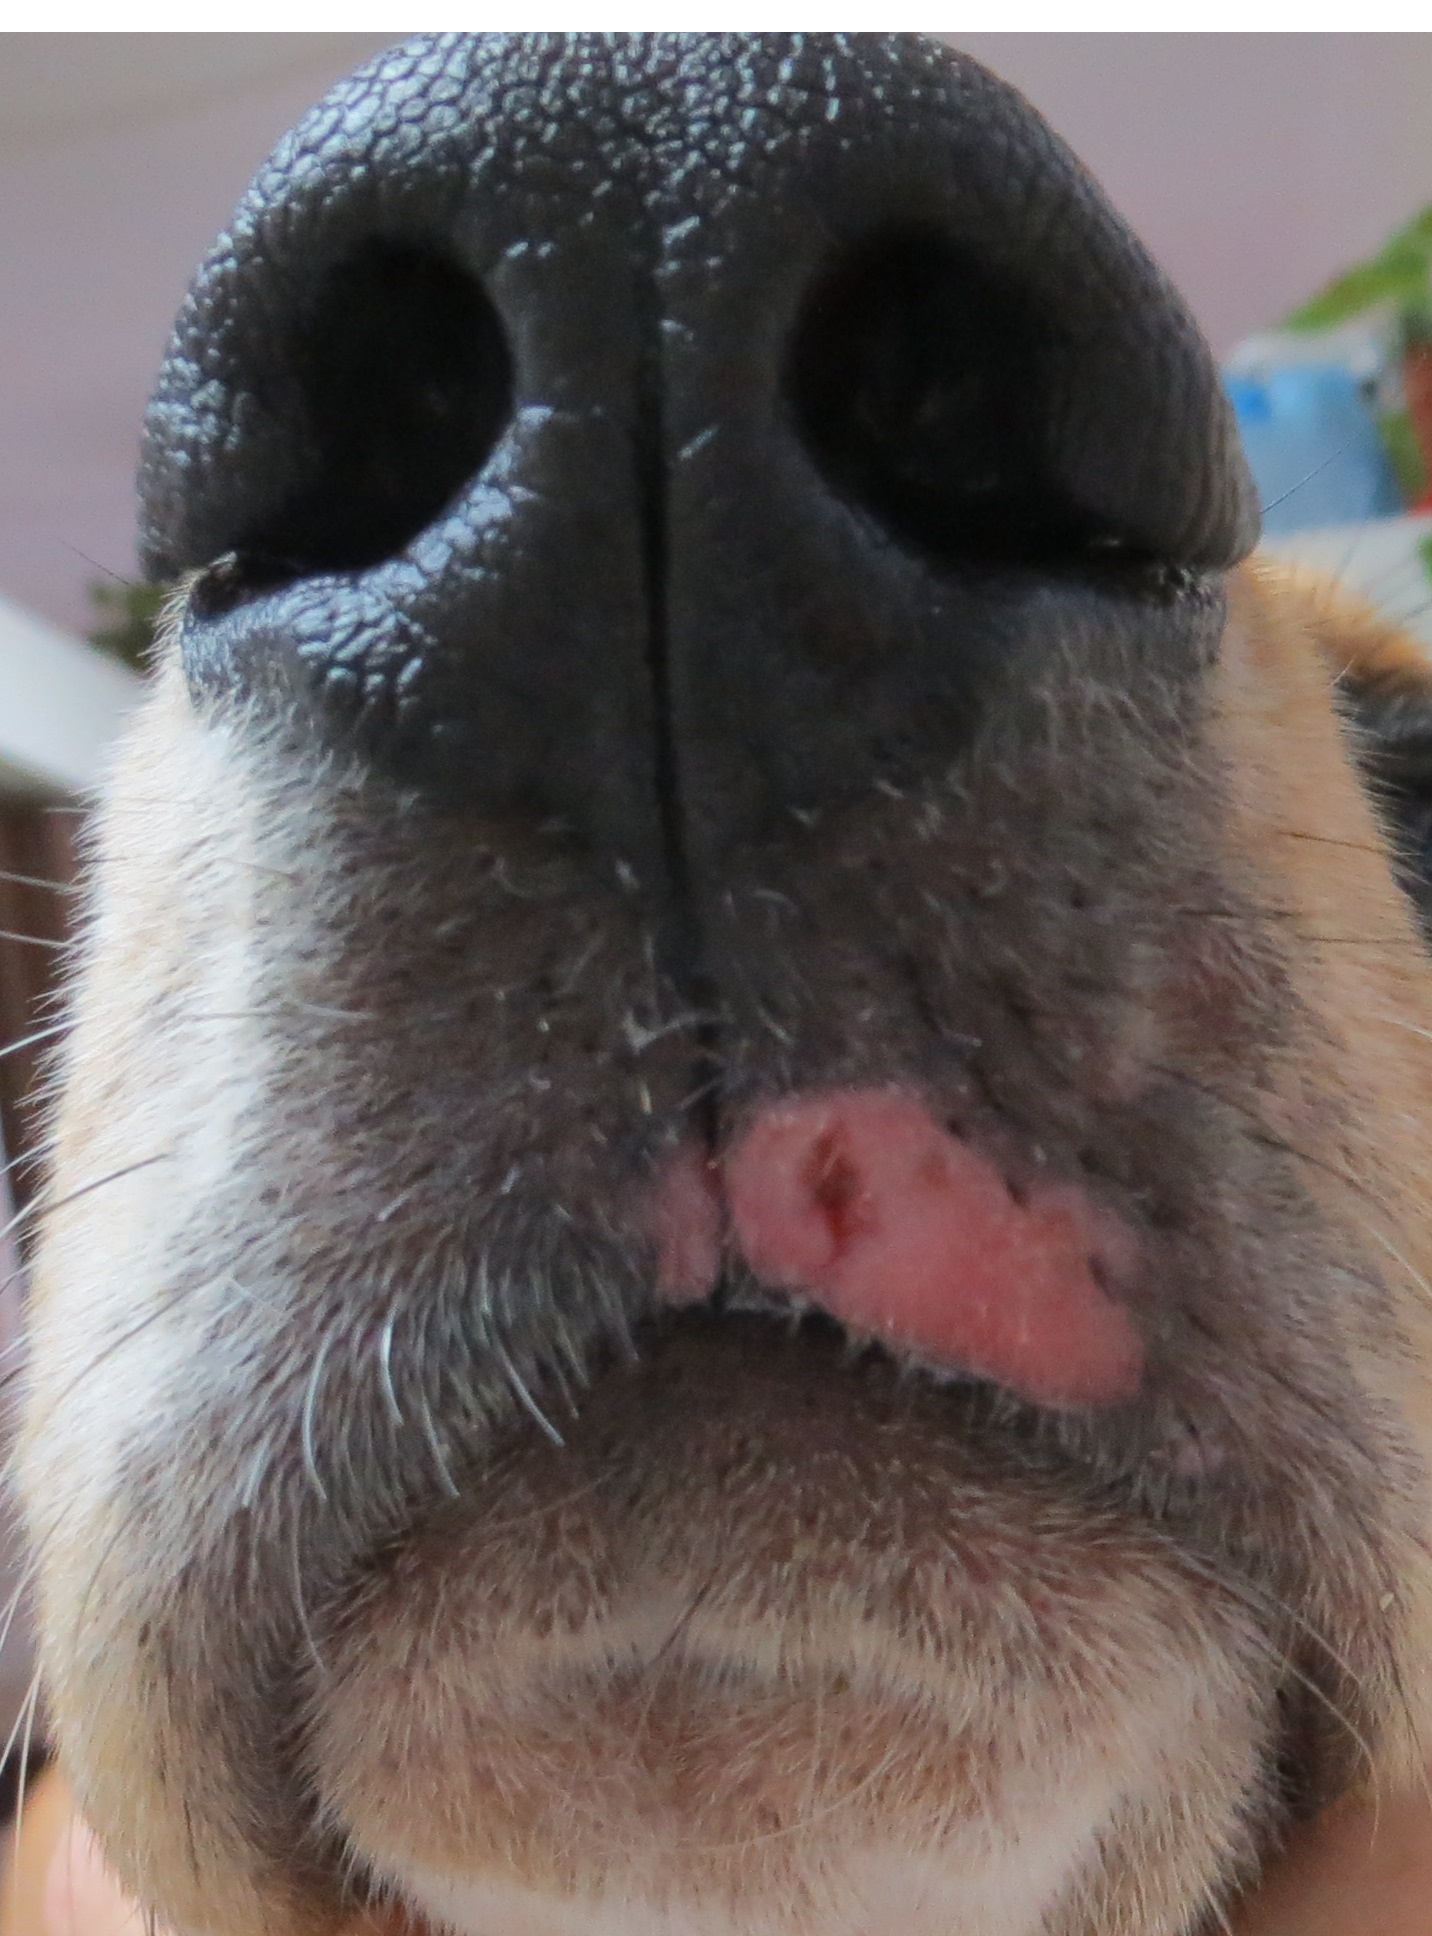 papilomatosis canina tratamiento condiloame ale vulvei și vaginului